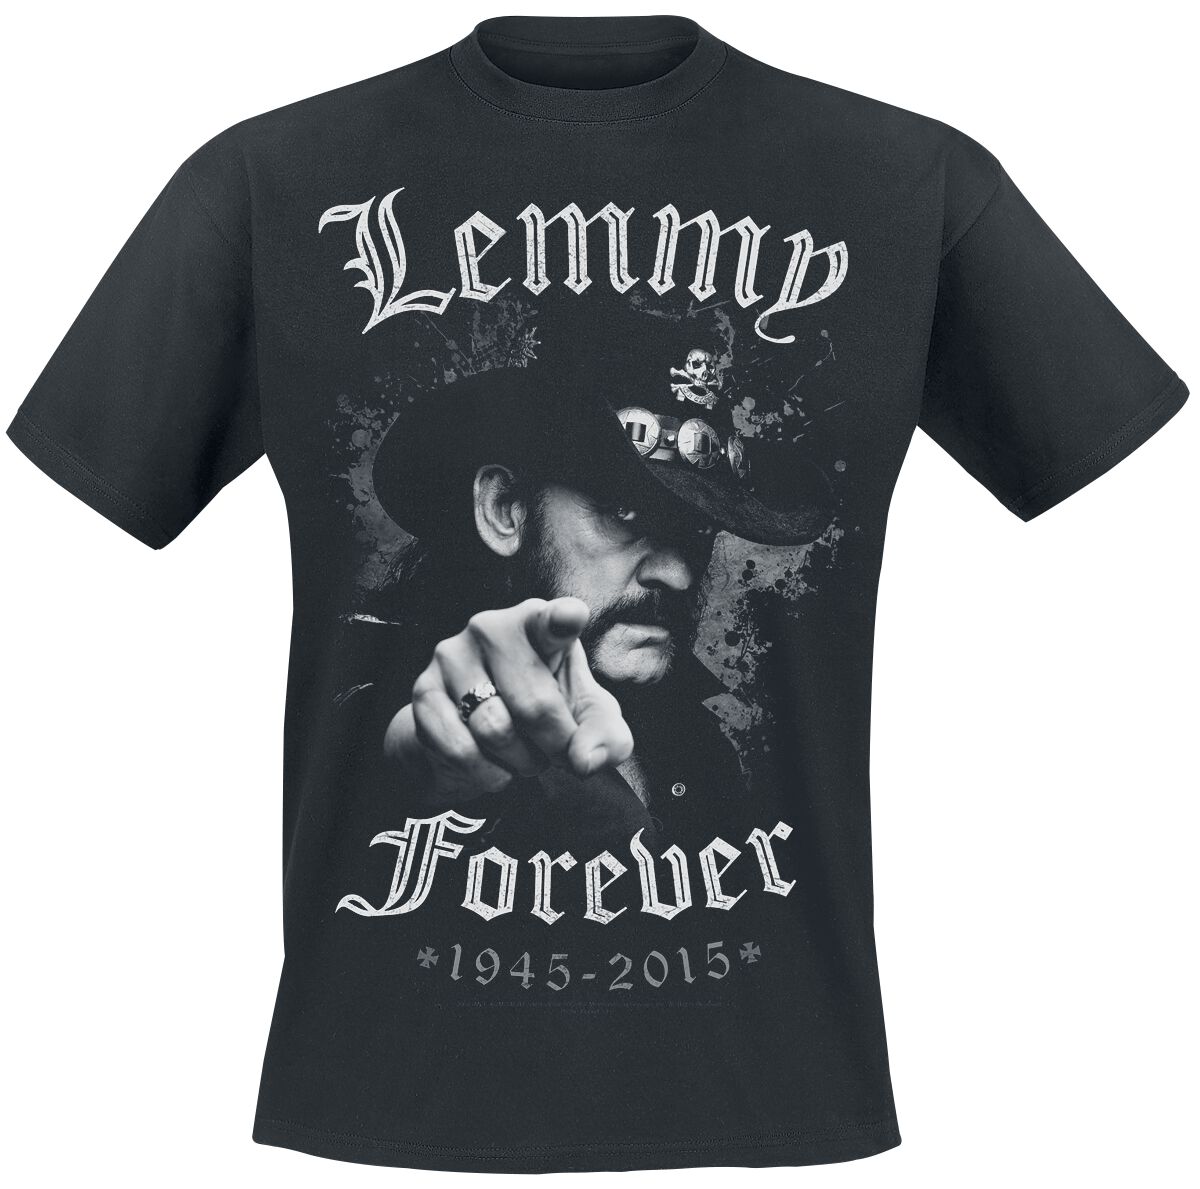 Motörhead T-Shirt - Lemmy - Forever - M bis 5XL - für Männer - Größe XL - schwarz  - EMP exklusives Merchandise!